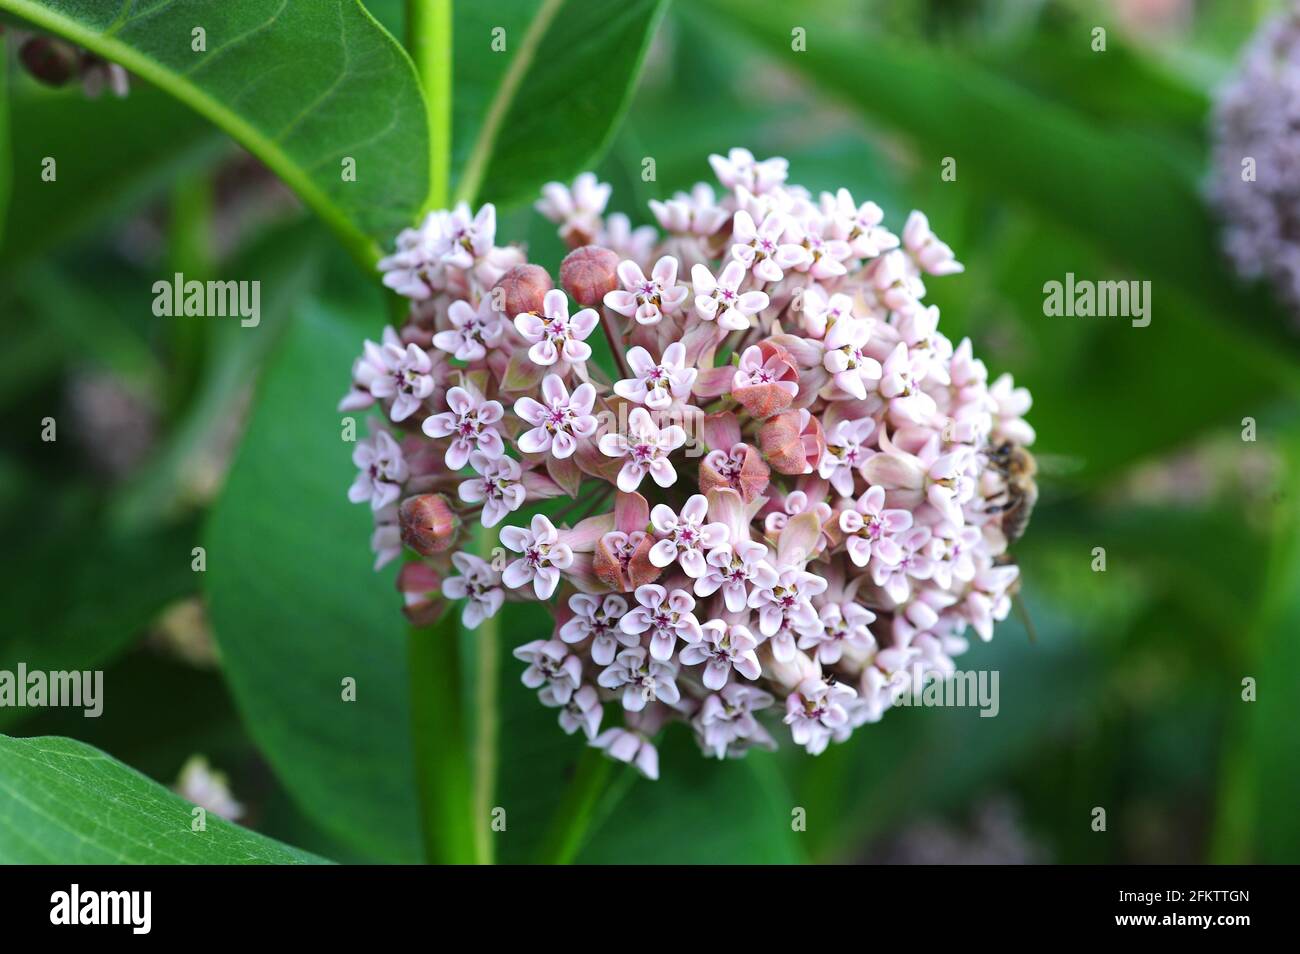 La flor común de la maleza o de la mariposa (Asclepias syriaca) es una hierba perenne venenosa nativa de Norteamérica (Canadá, Estados Unidos y México). Inflorescencia Foto de stock